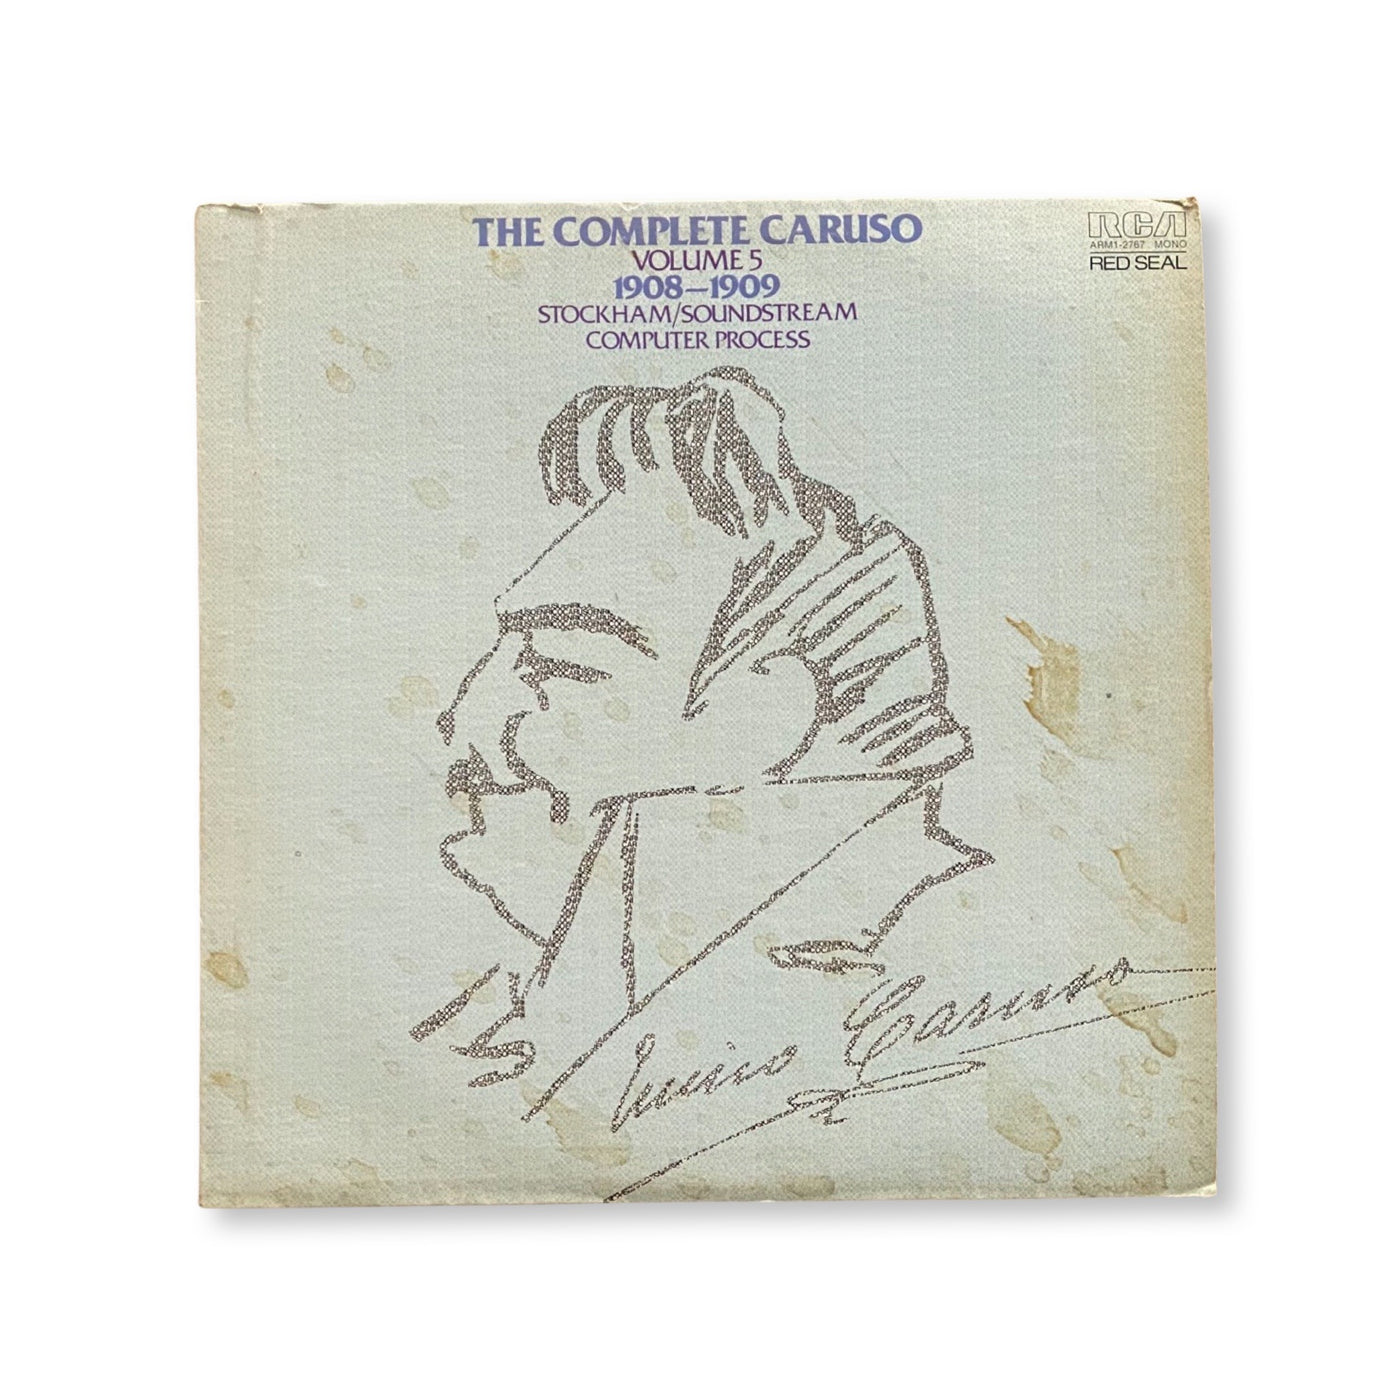 Enrico Caruso - The Complete Enrico Caruso, Volume 5, 1908-1909